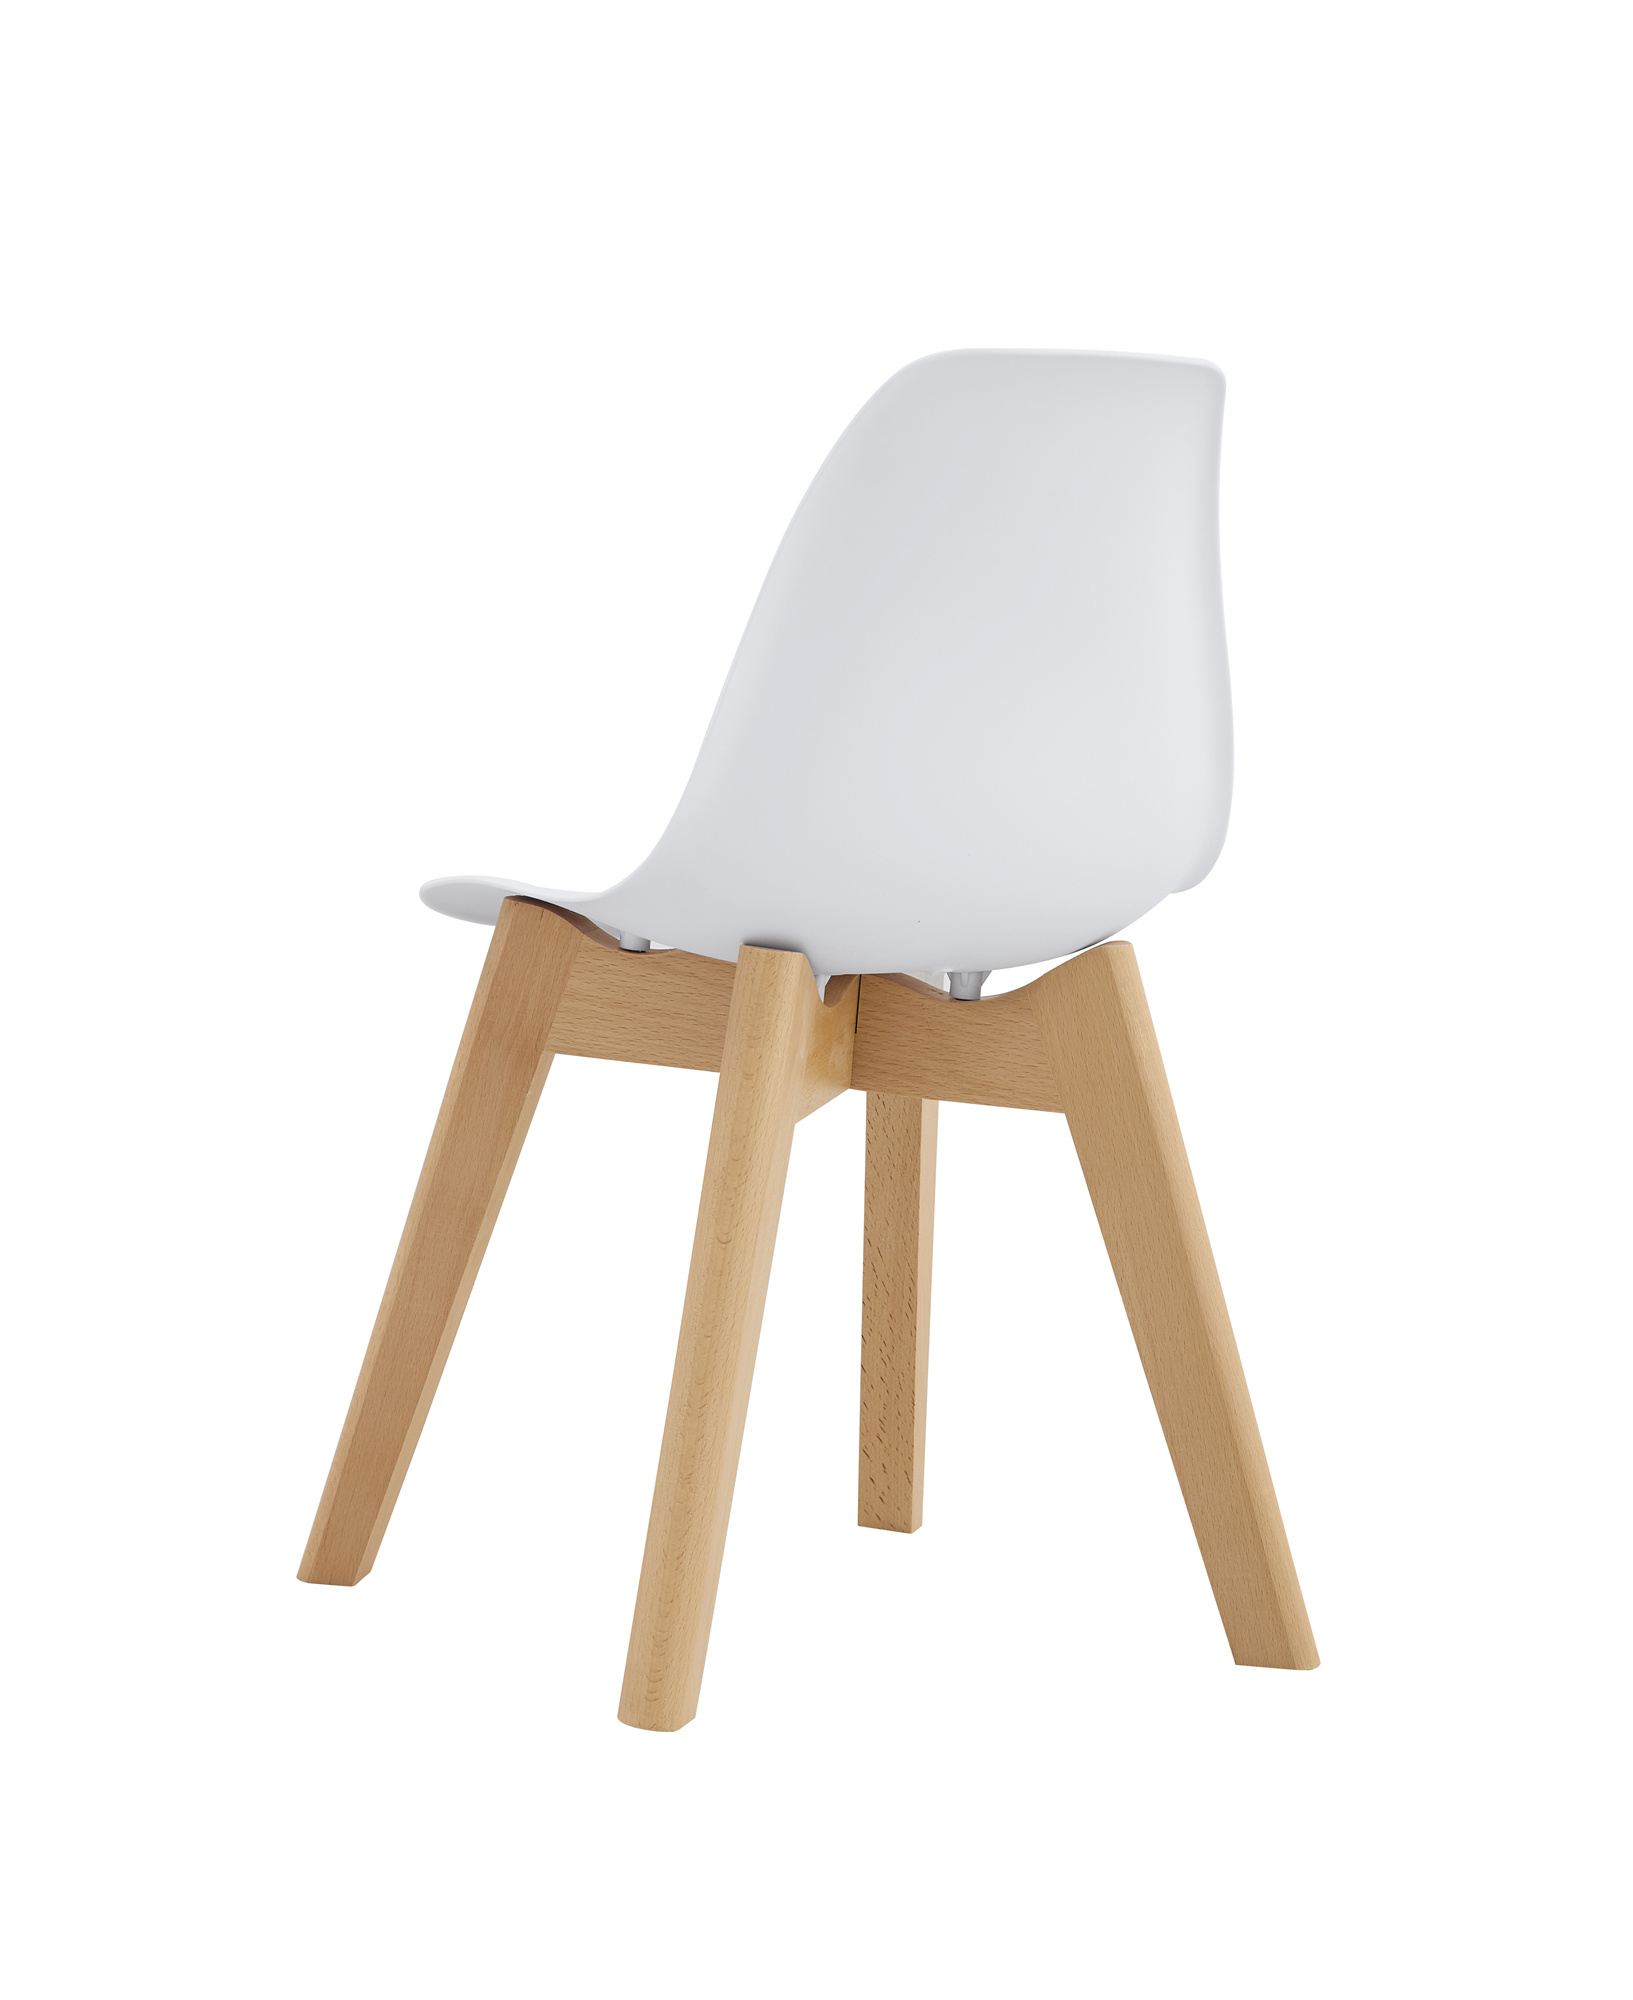 BB chair ,wood leg; Modern Kids Chair (Set of 2)  WHITE, 2 pcs per set-CASAINC